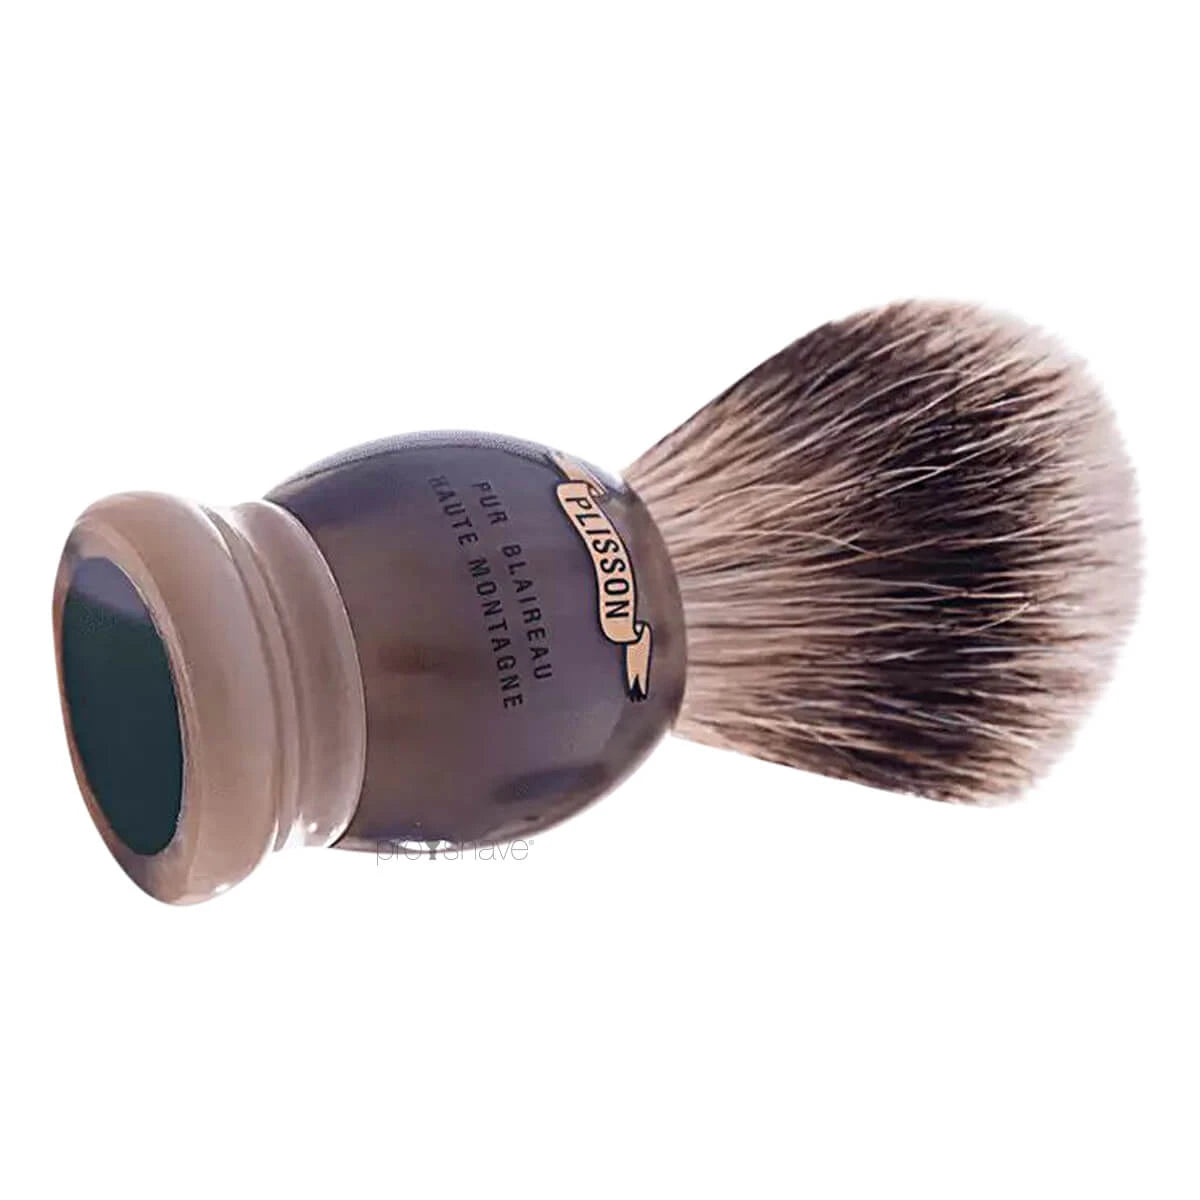 Plisson Shaving Brush, High Mountain White Badger & Genuine Horn-Size 12